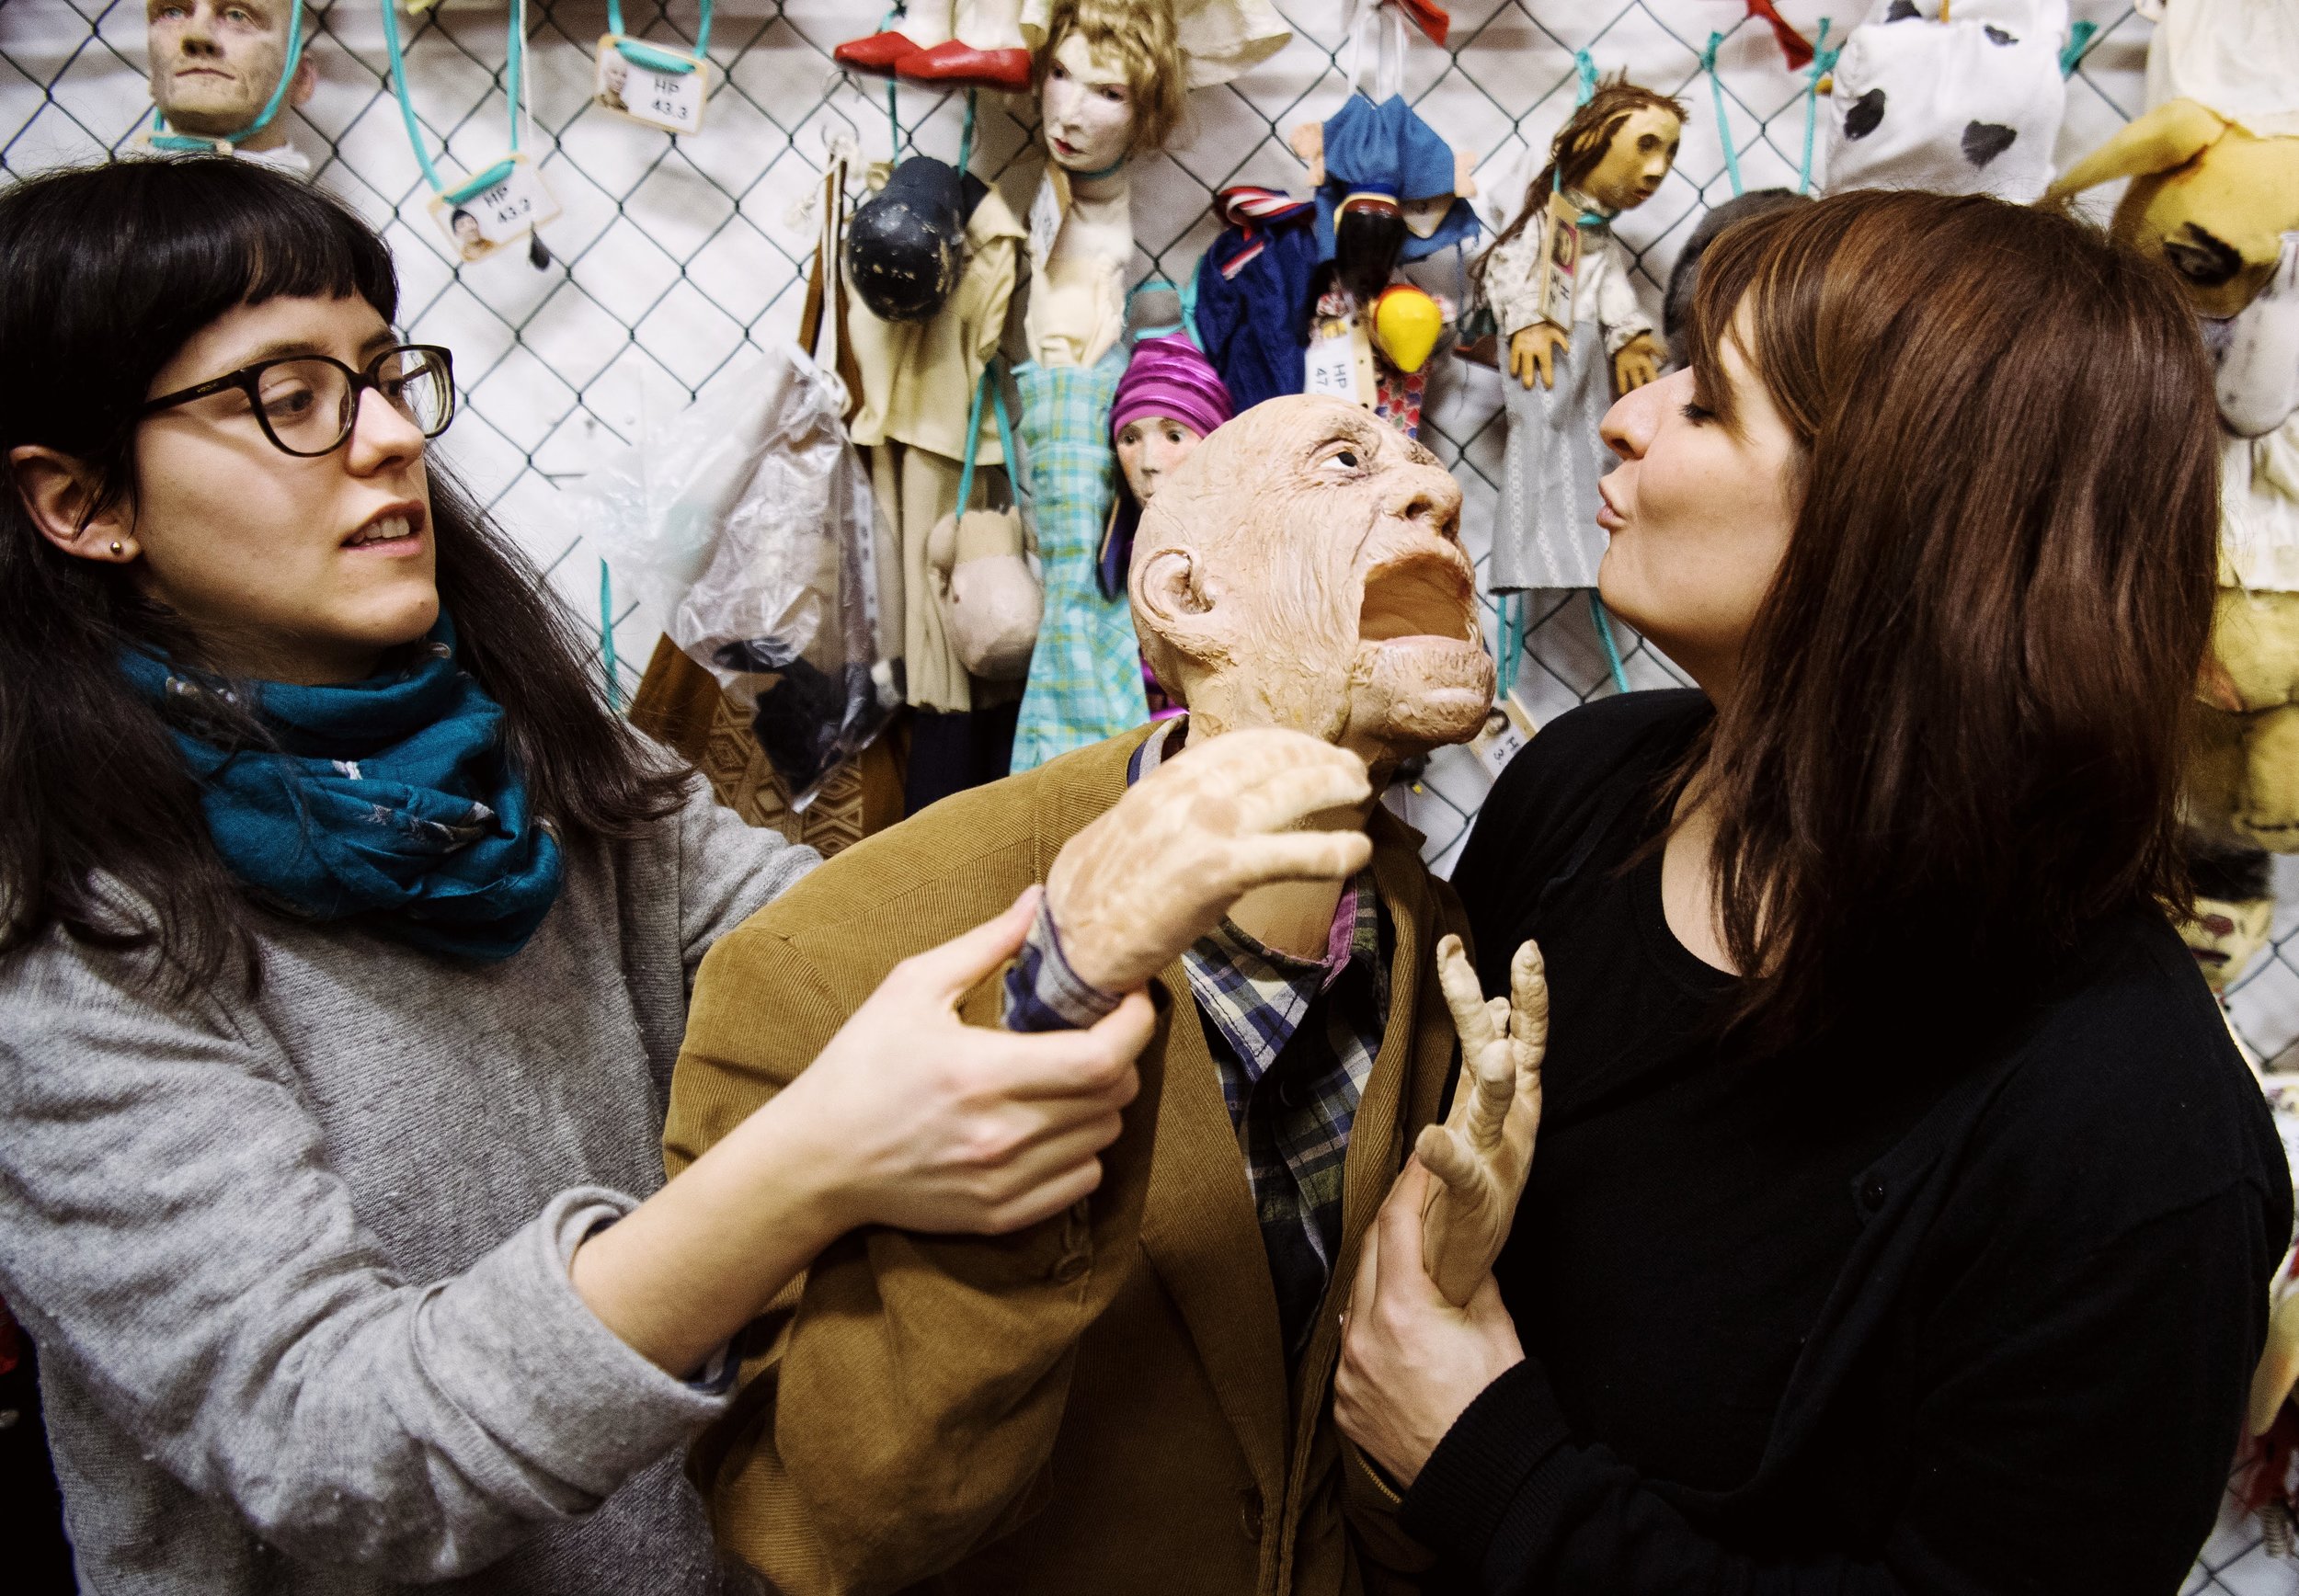  Die Puppenspielstudentinnen Nadia Ihjeij (l) und Sarah Zastrau spiele mit einer lebensgroßen Puppe eines alten Mannes. 